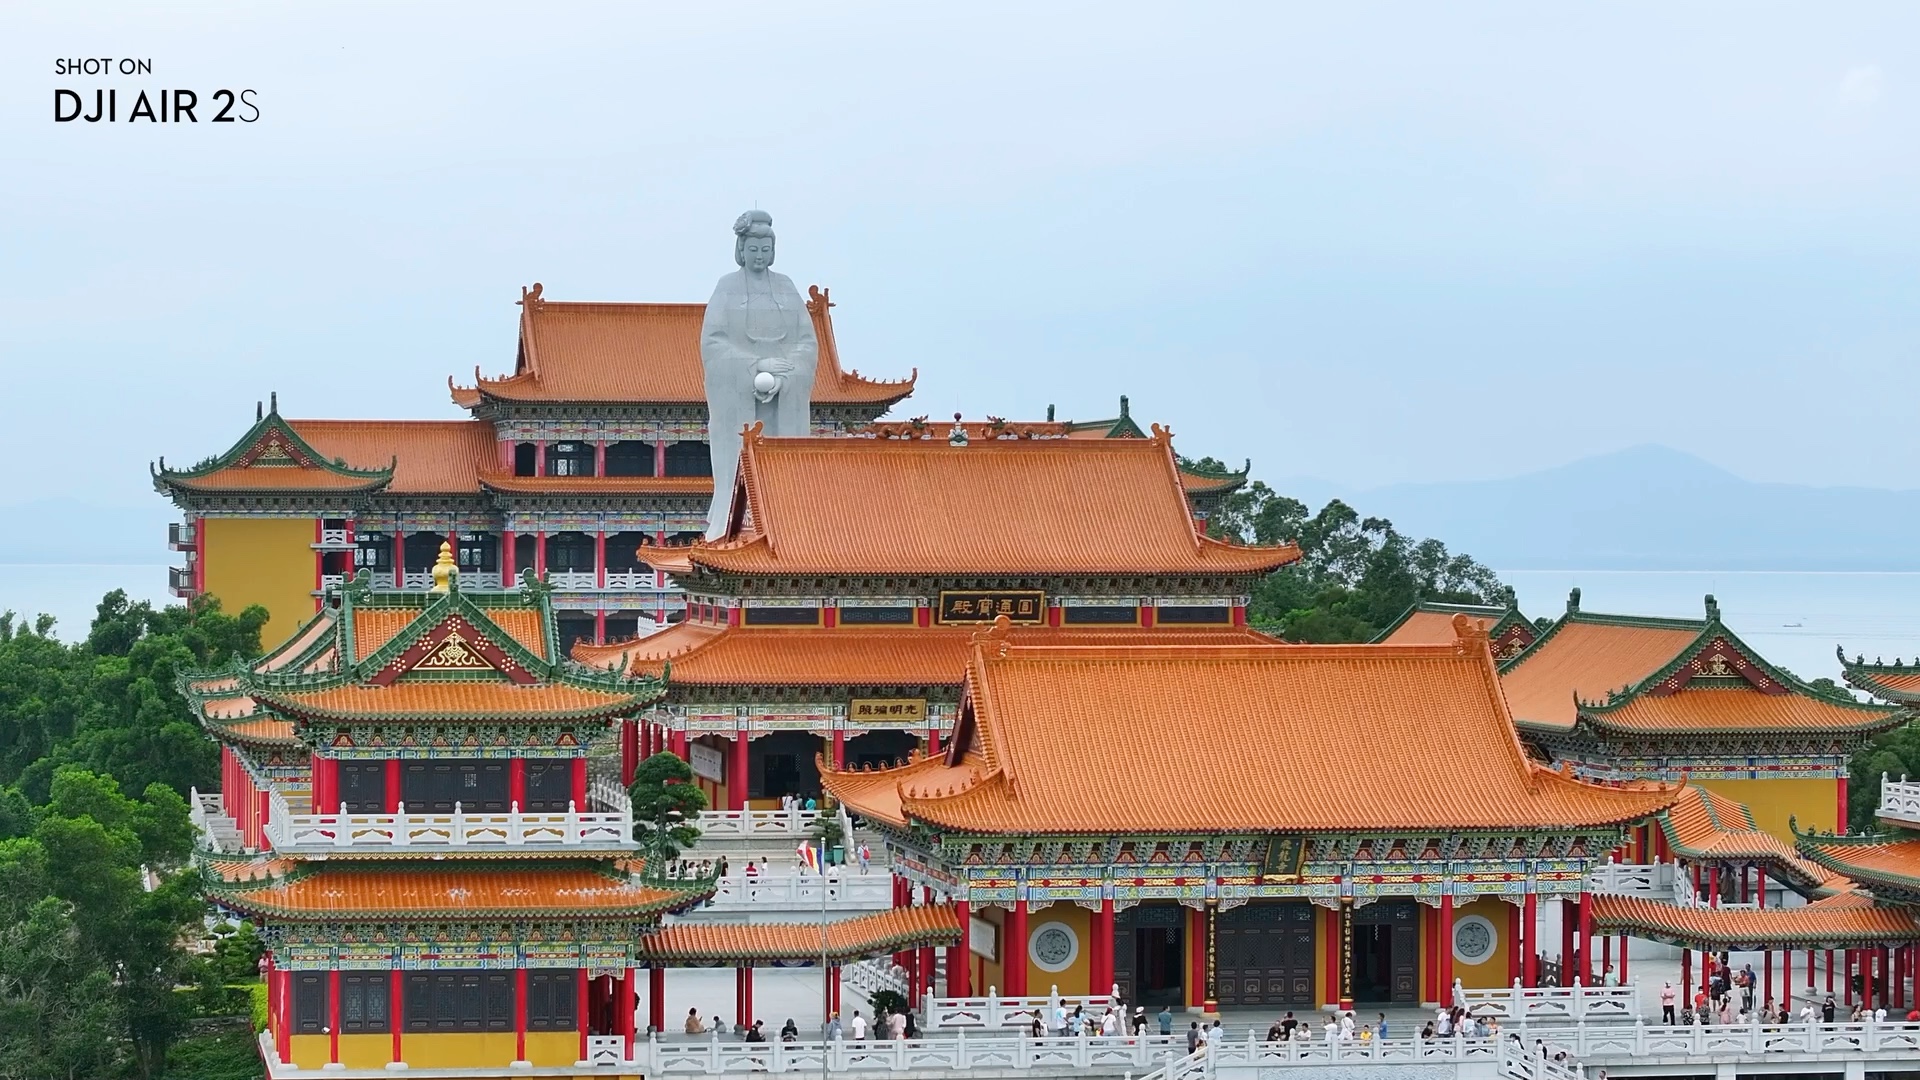 这里是位于广东境内的阳江飞龙寺,是众多佛教建筑的代表之一,它的建筑